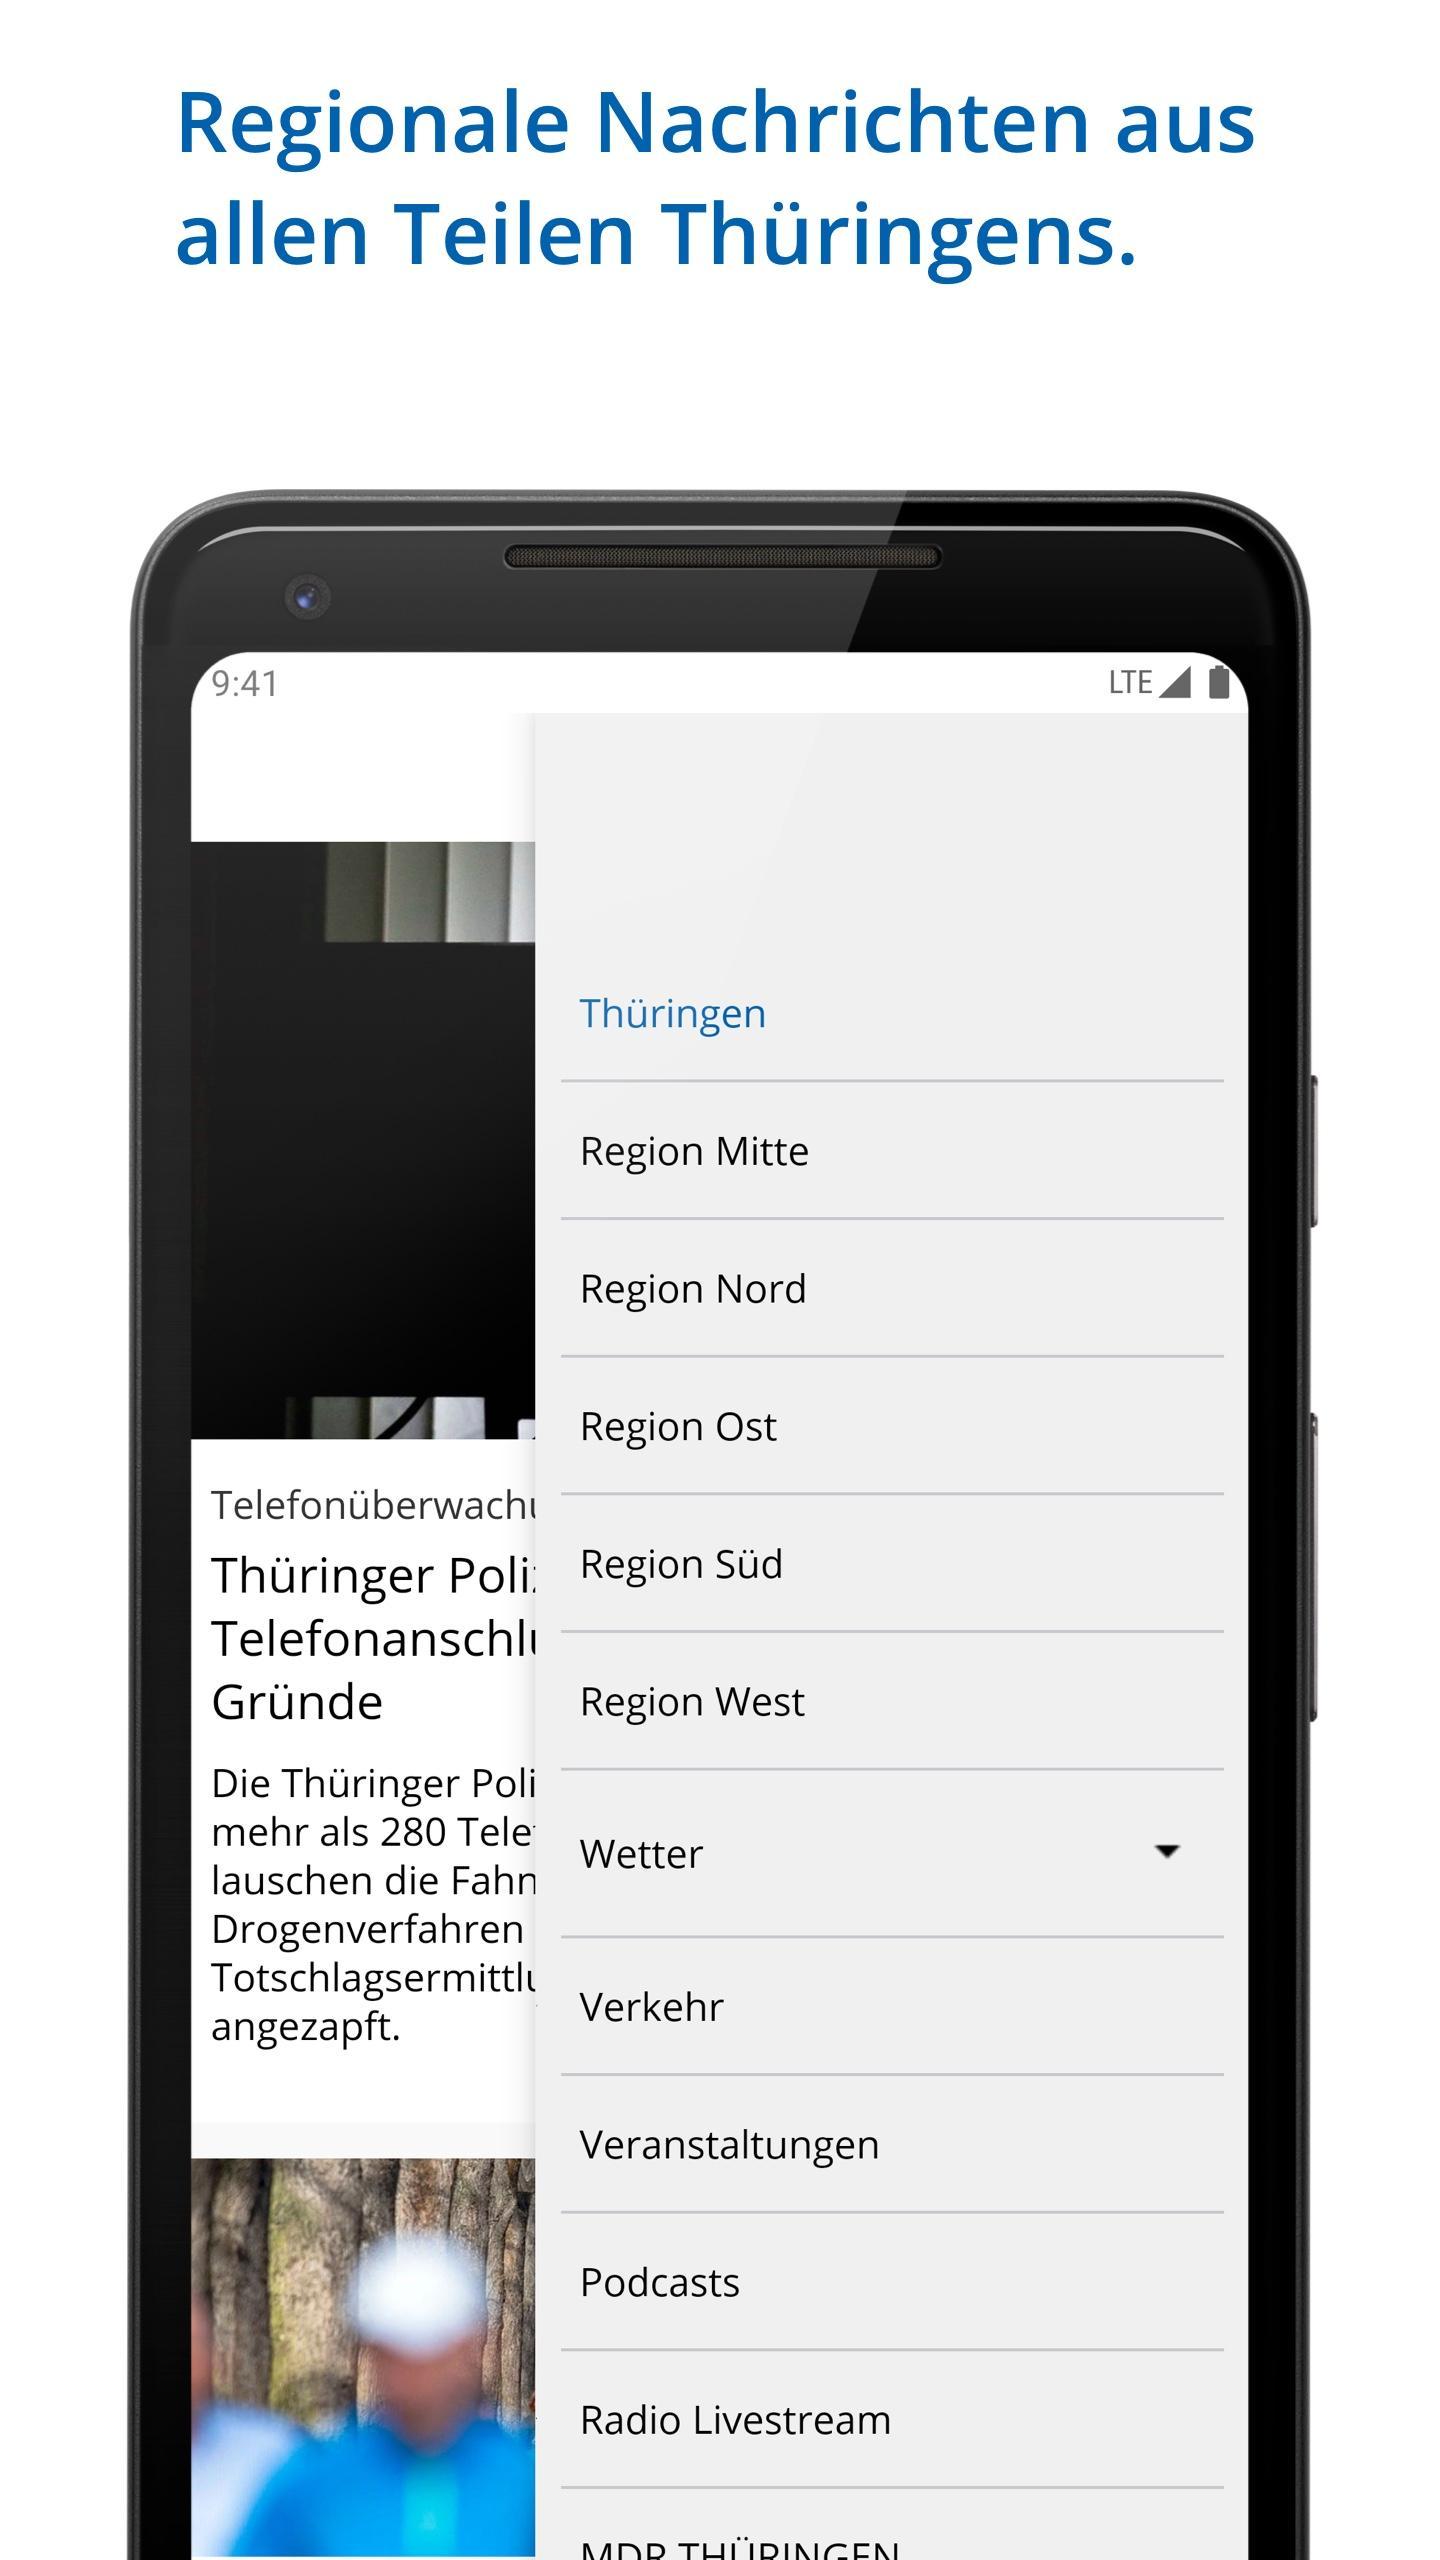 MDR Thüringen for Android - APK Download